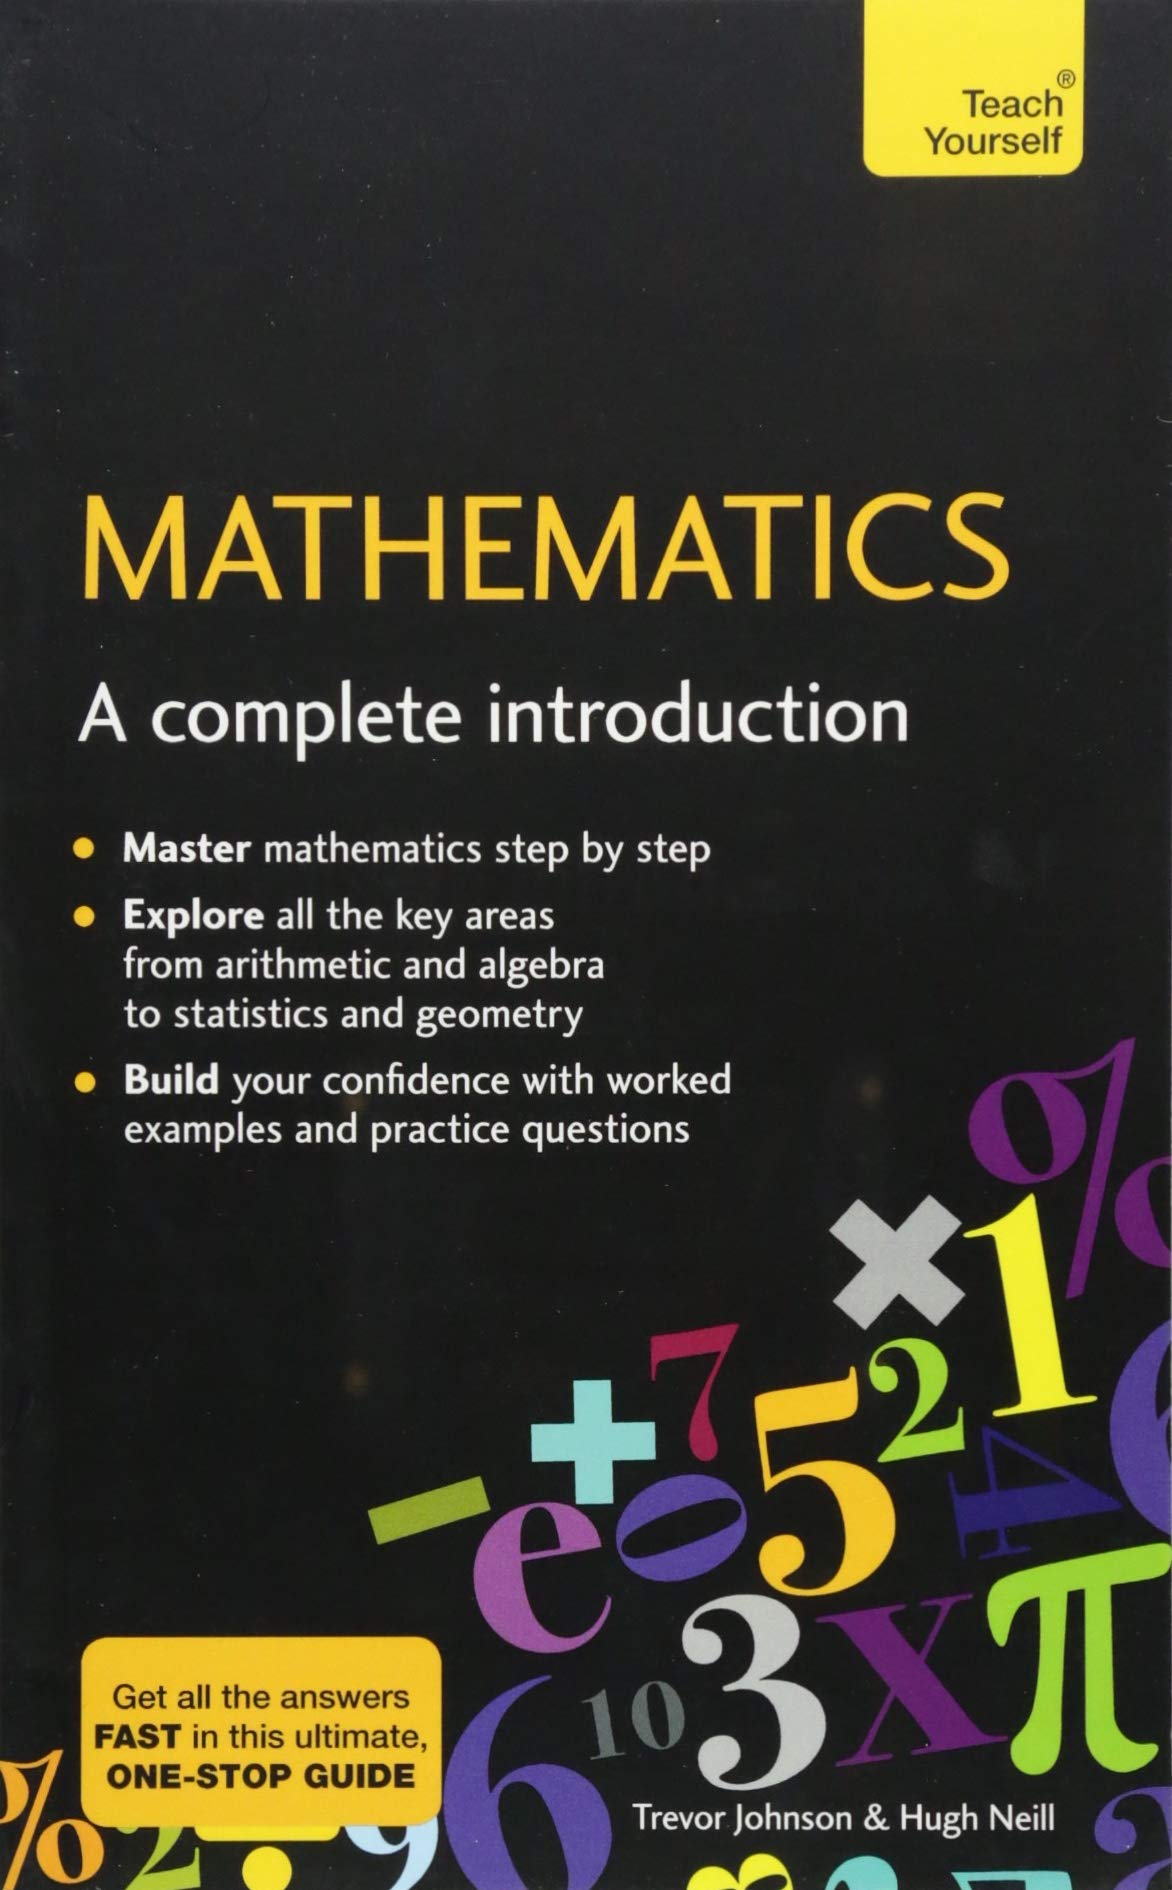 edu math intro games